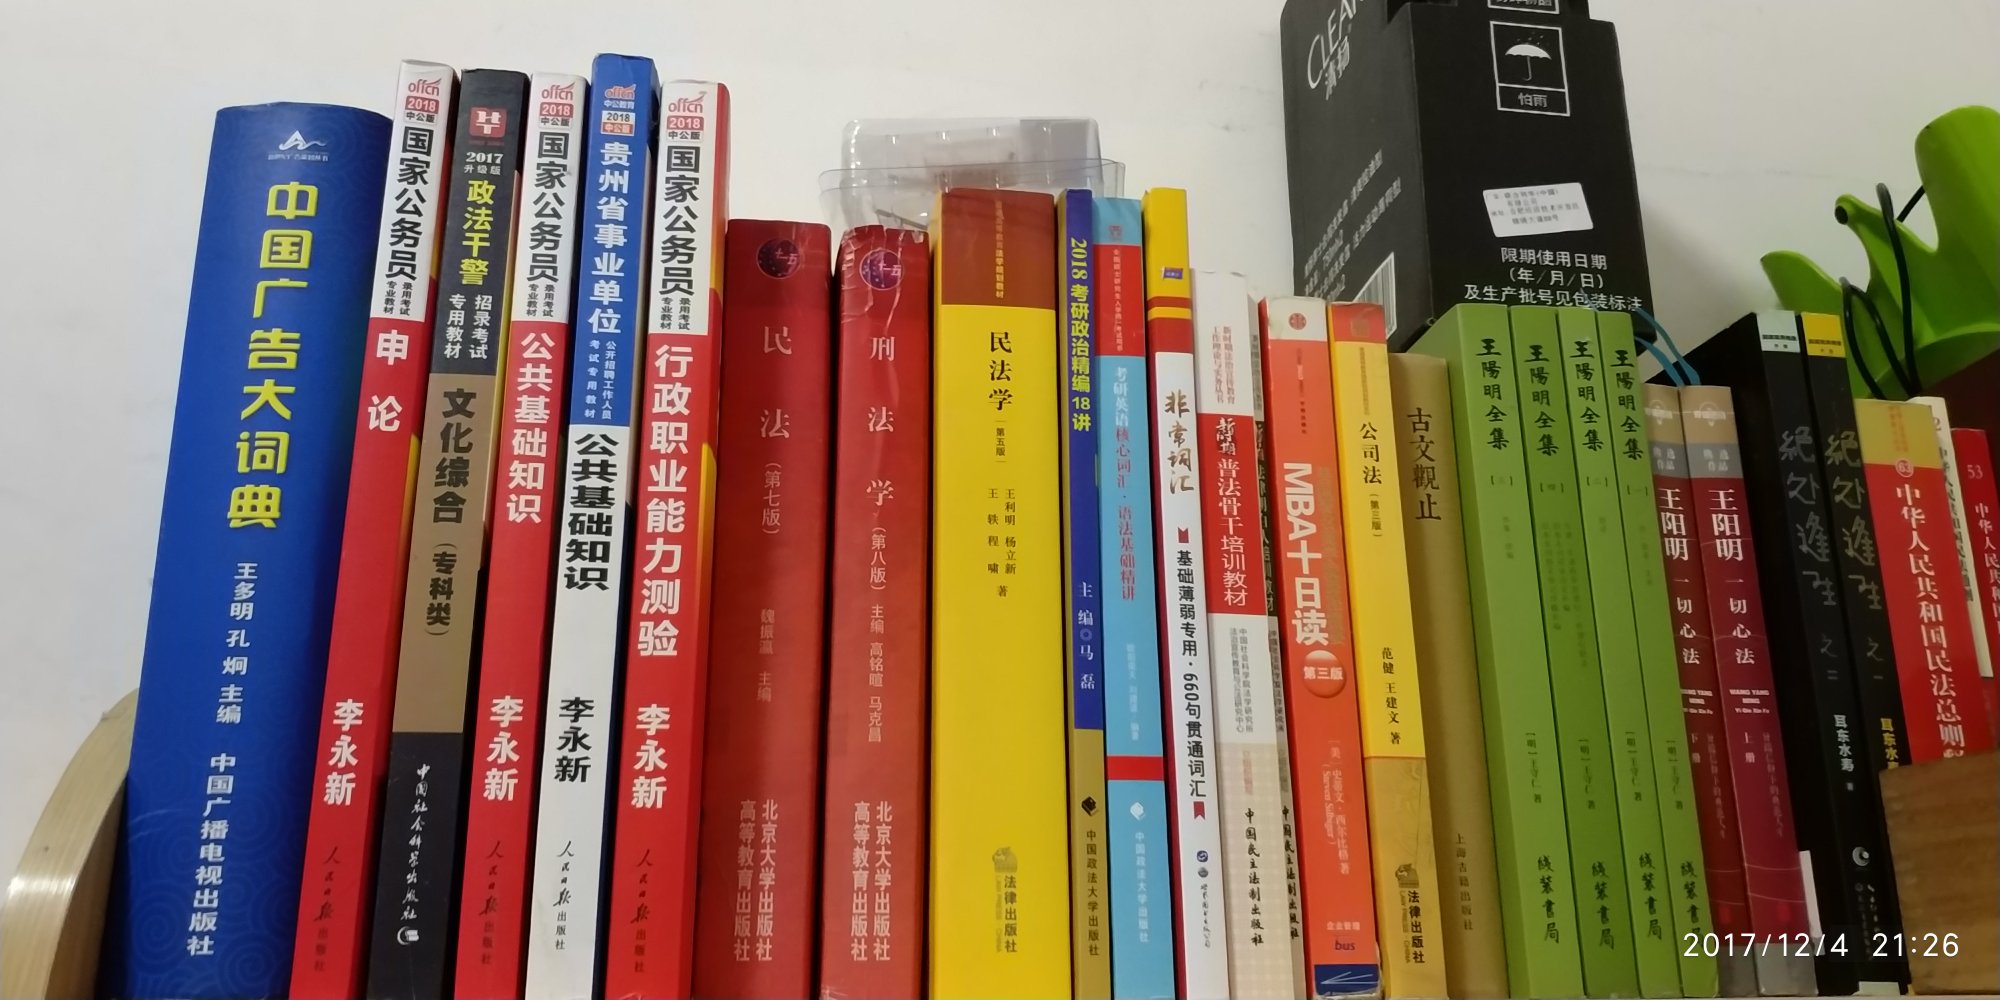 书居然比刑法还厚，这套书跟高等教育出版社&北京大学出版社的比各有特色。